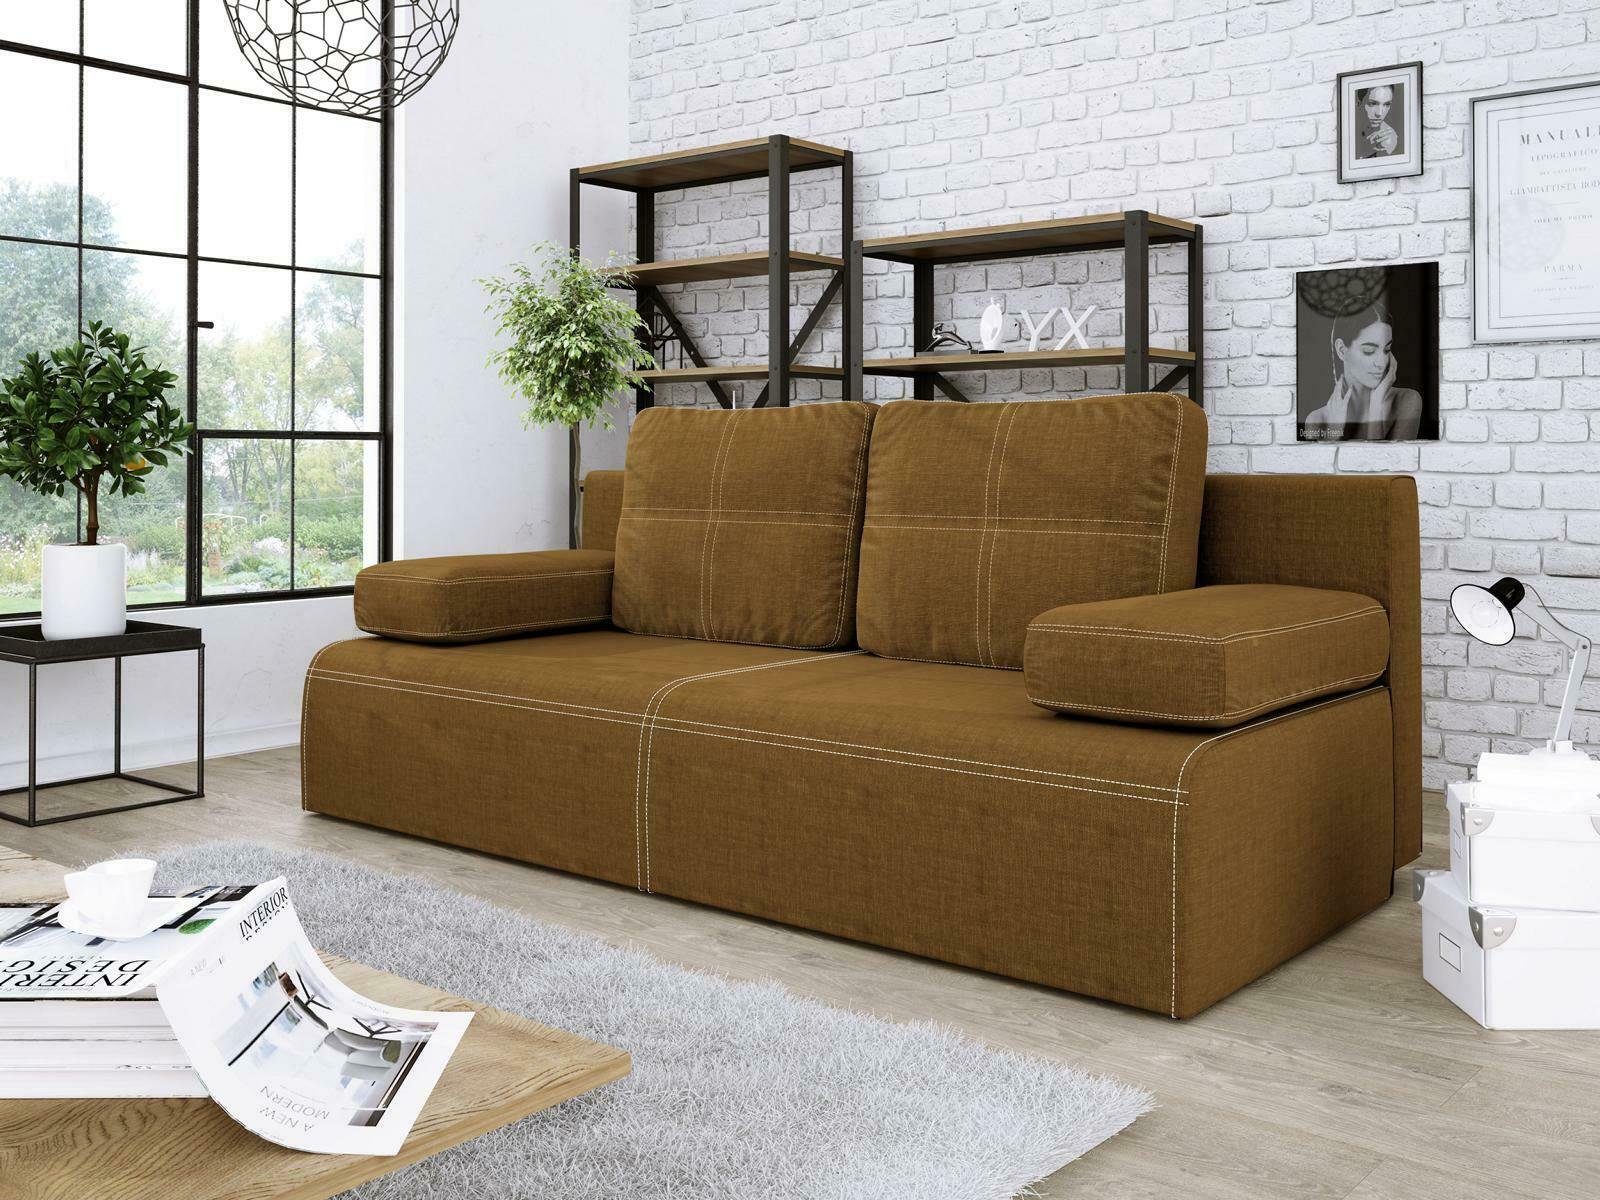 JVmoebel Sofa Grüner Dreisitzer Stoffsofa Couch Europe in Made Neu, Design Möbel Braun Luxus